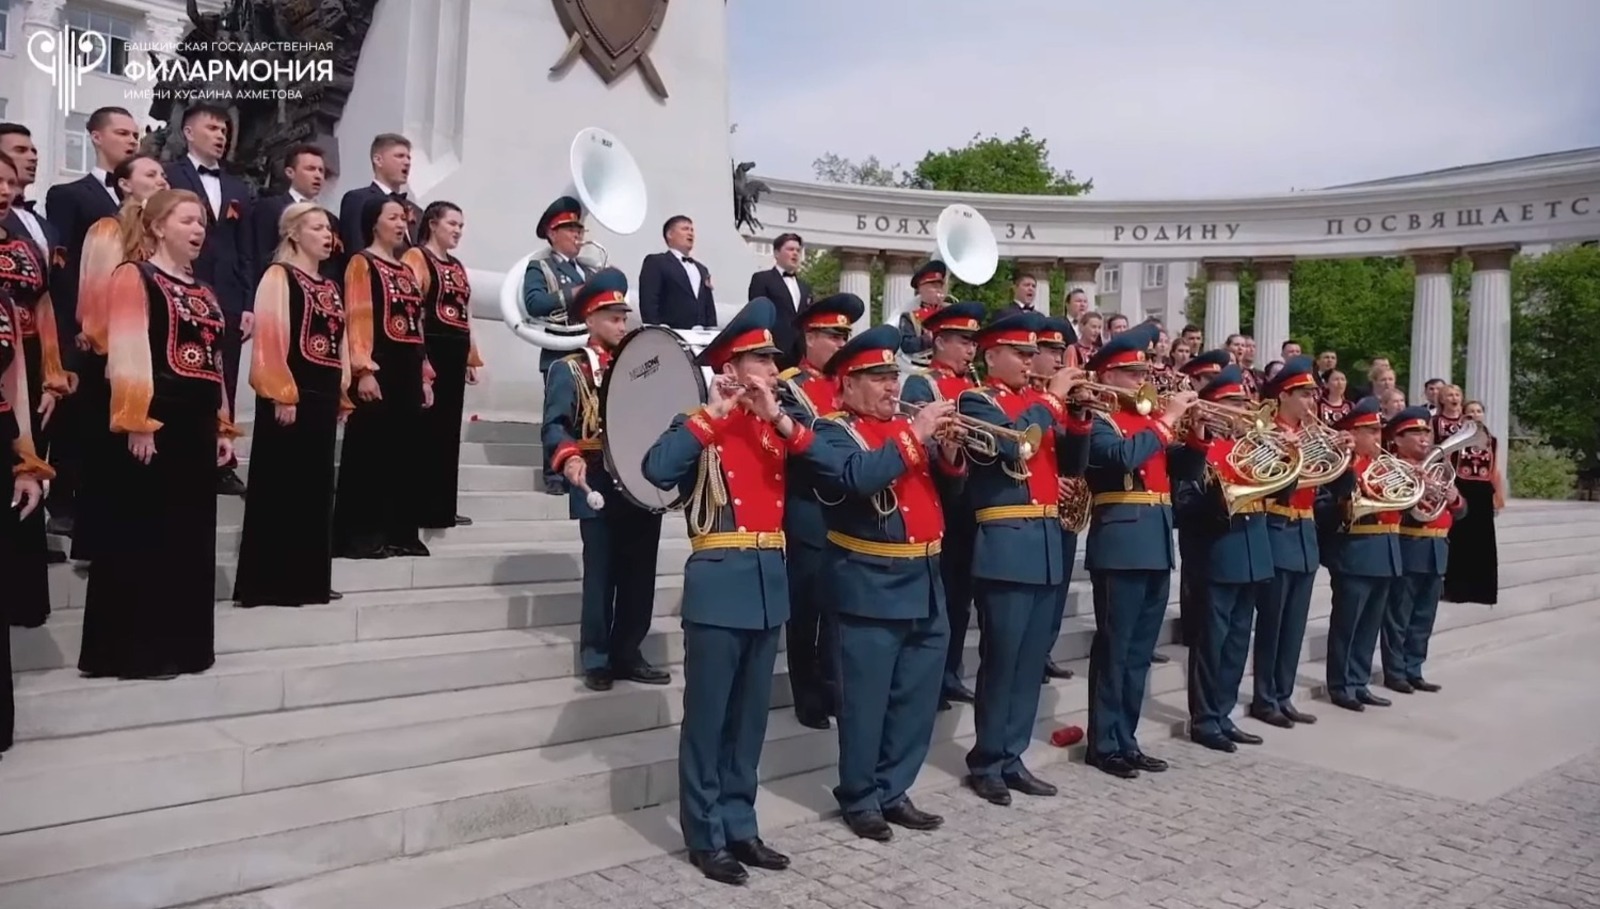 В столице Башкирии хор и духовой оркестр  поздравили жителей региона с Днём Победы песней «Шаймуратов генерал»